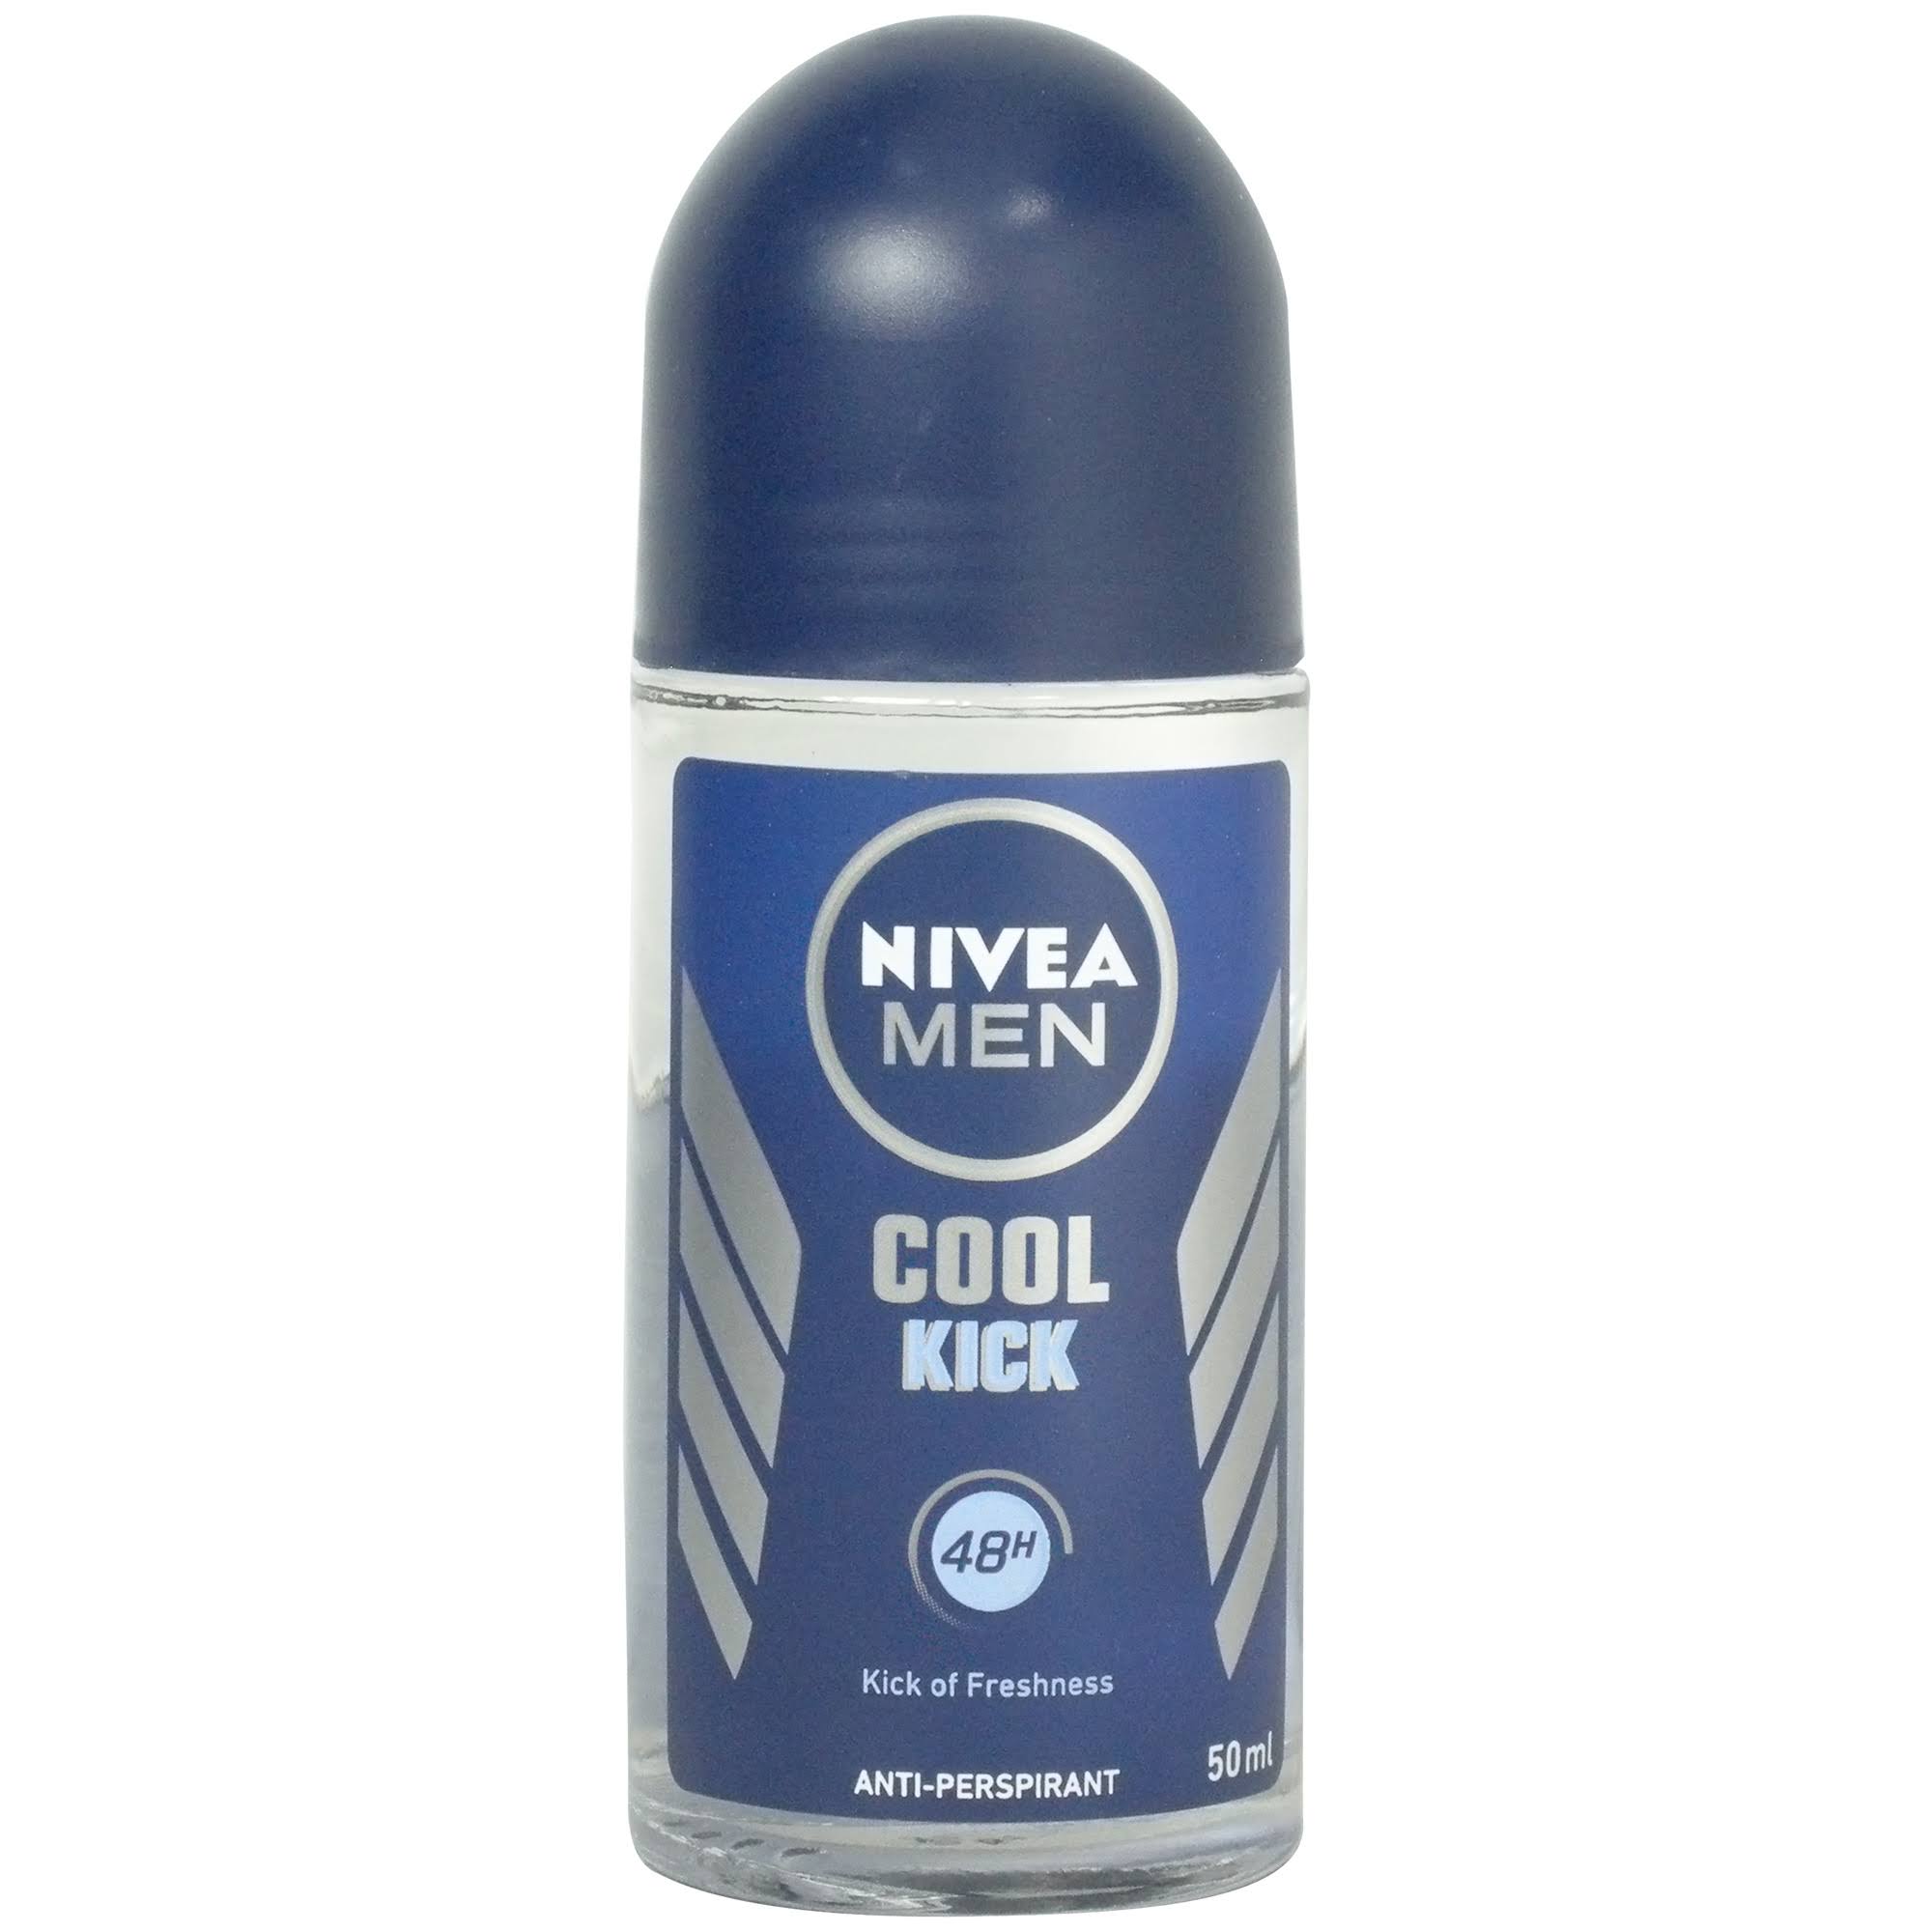 Nivea Men Cool Kick Anti Perspirant Roll On Deodorant - 50ml